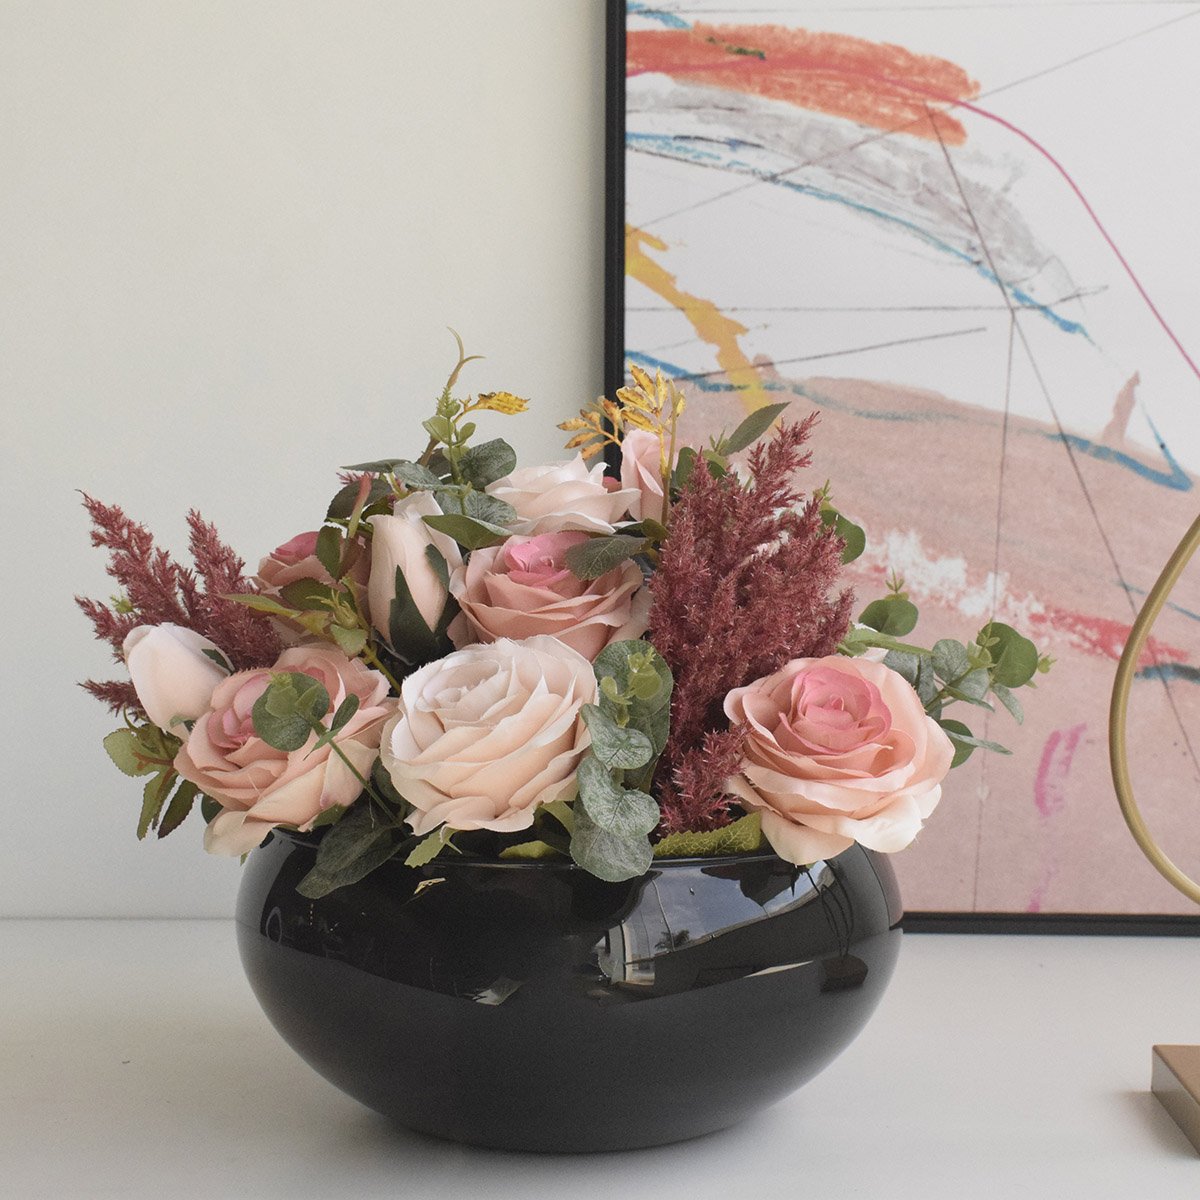 Arranjo de Rosas Rosa e Flores Envelhecidas no Vaso de Vidro Preto |linha Permanente Formosinha